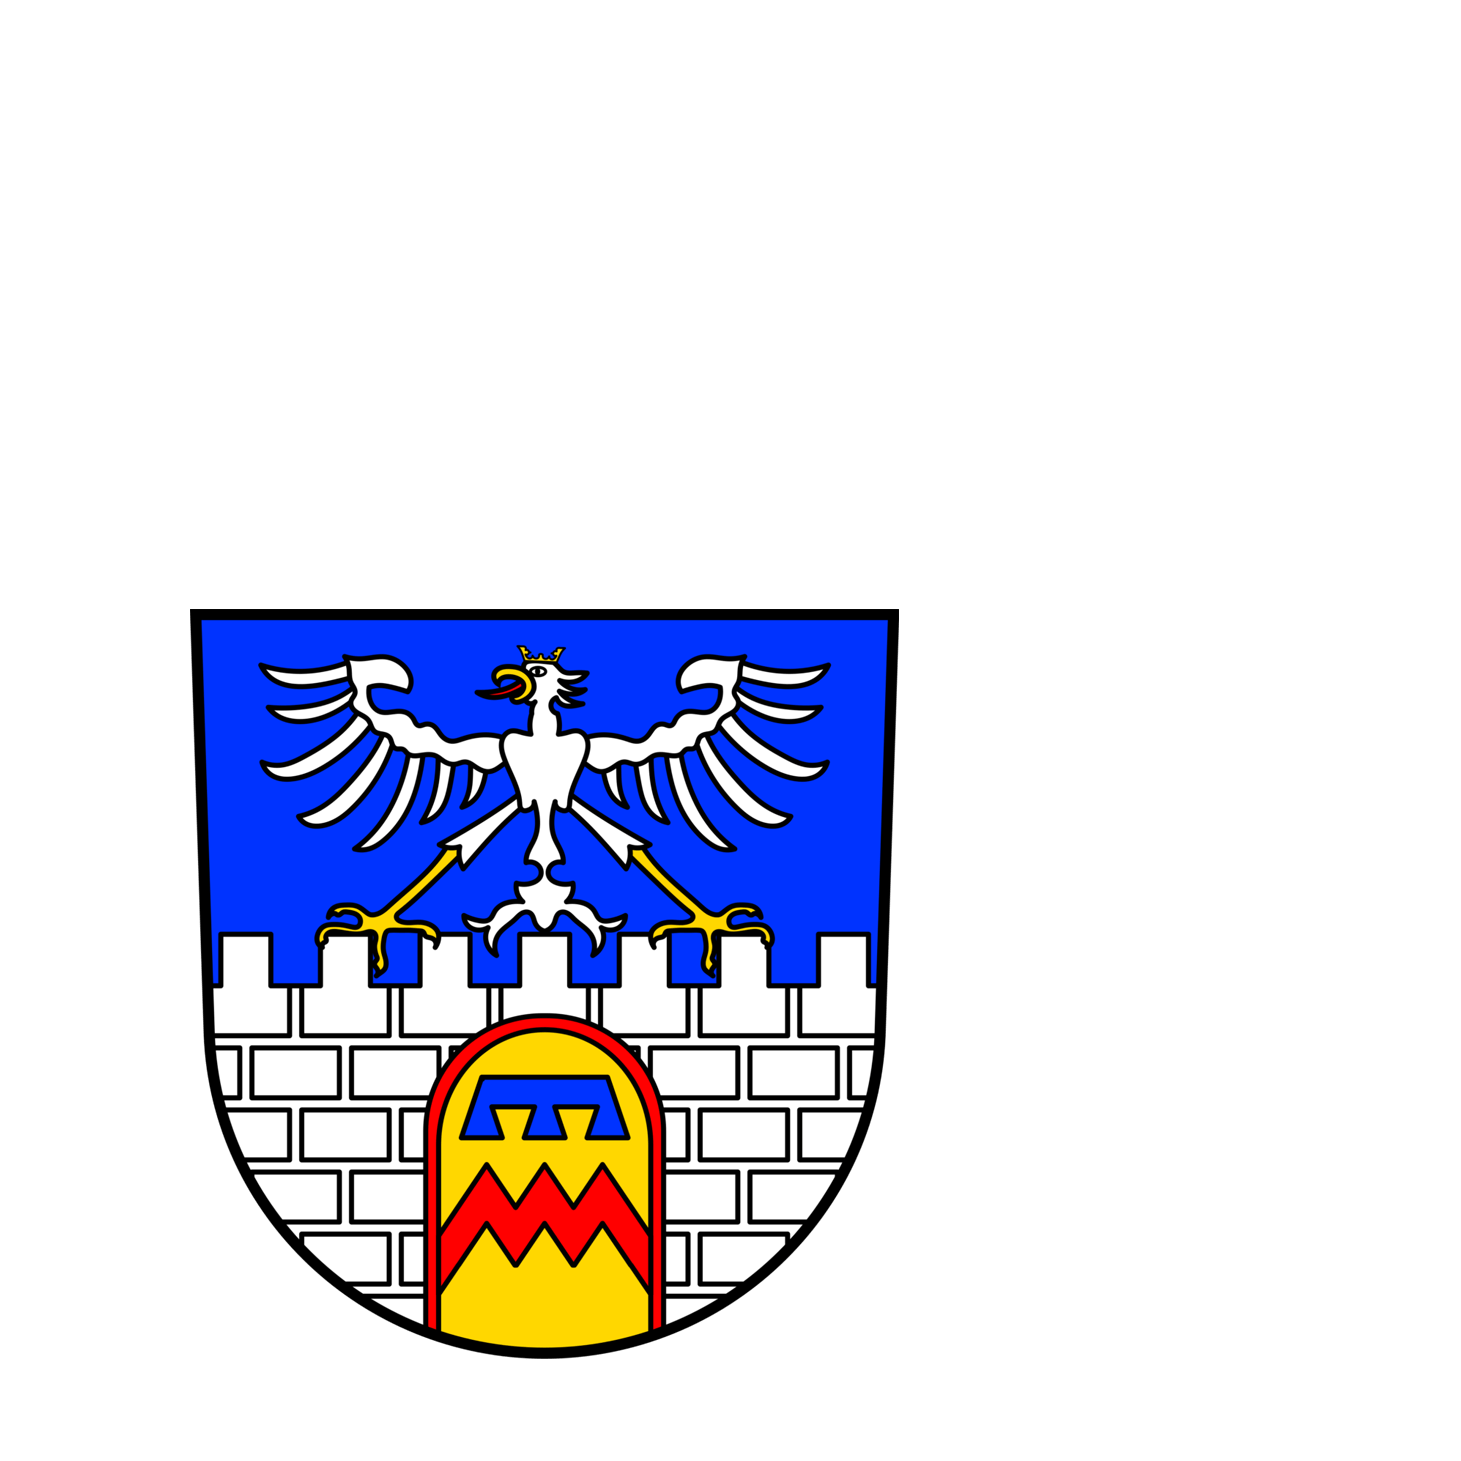 Wappen der Stadt Dillingen/Saar - © Stadt Dillingen/Saar